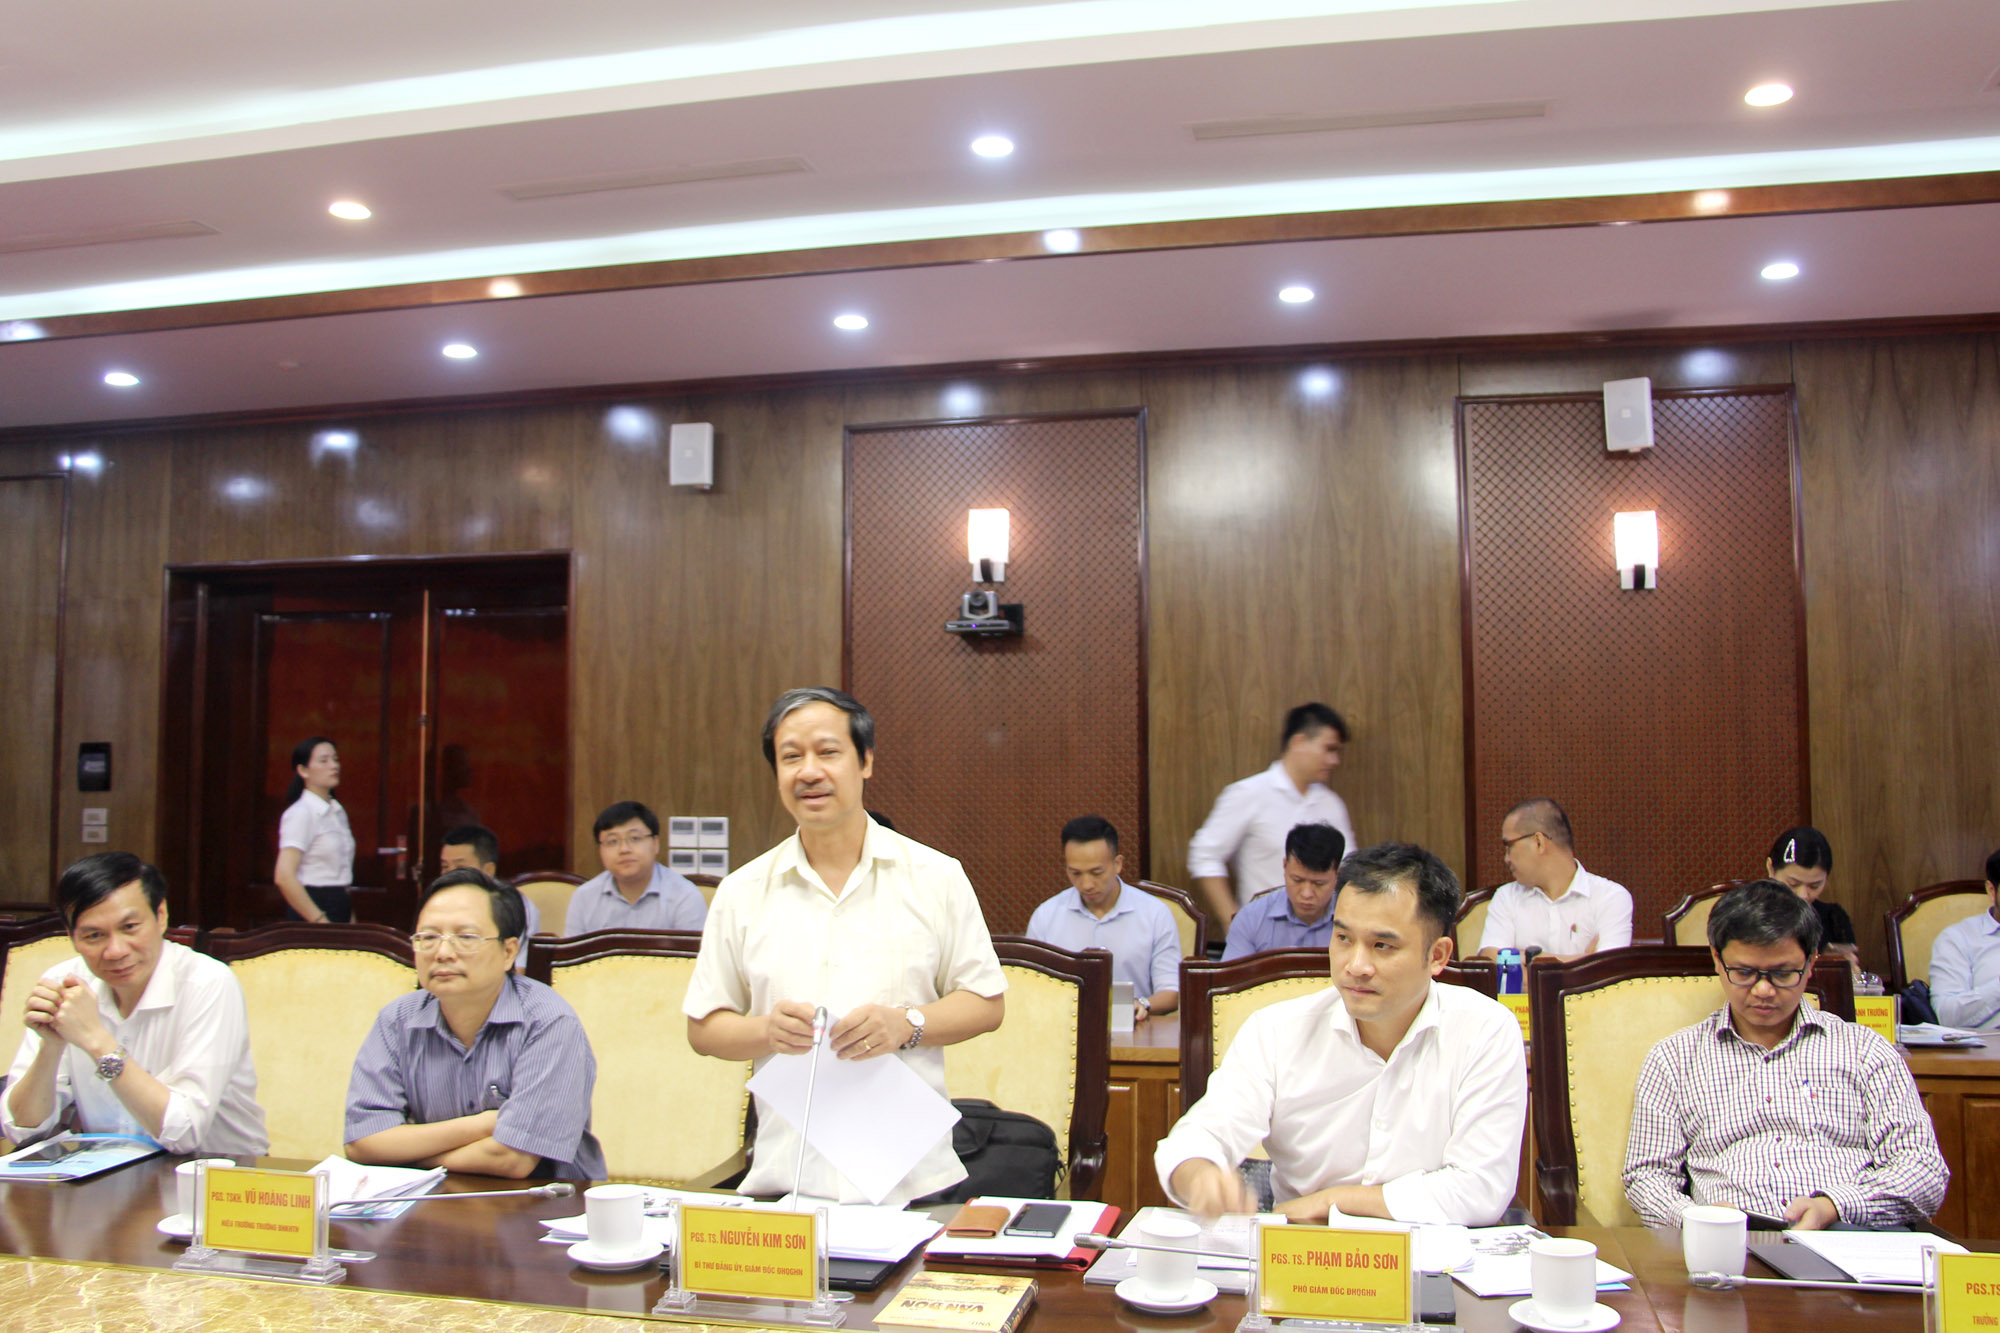 Trong buổi làm việc với Ban Thường vụ Tỉnh ủy, đoàn công tác của Đại học Quốc gia Hà Nội đóng góp ý kiến tâm huyết, trí tuệ vào dự thảo báo cáo chính trị của tỉnh.